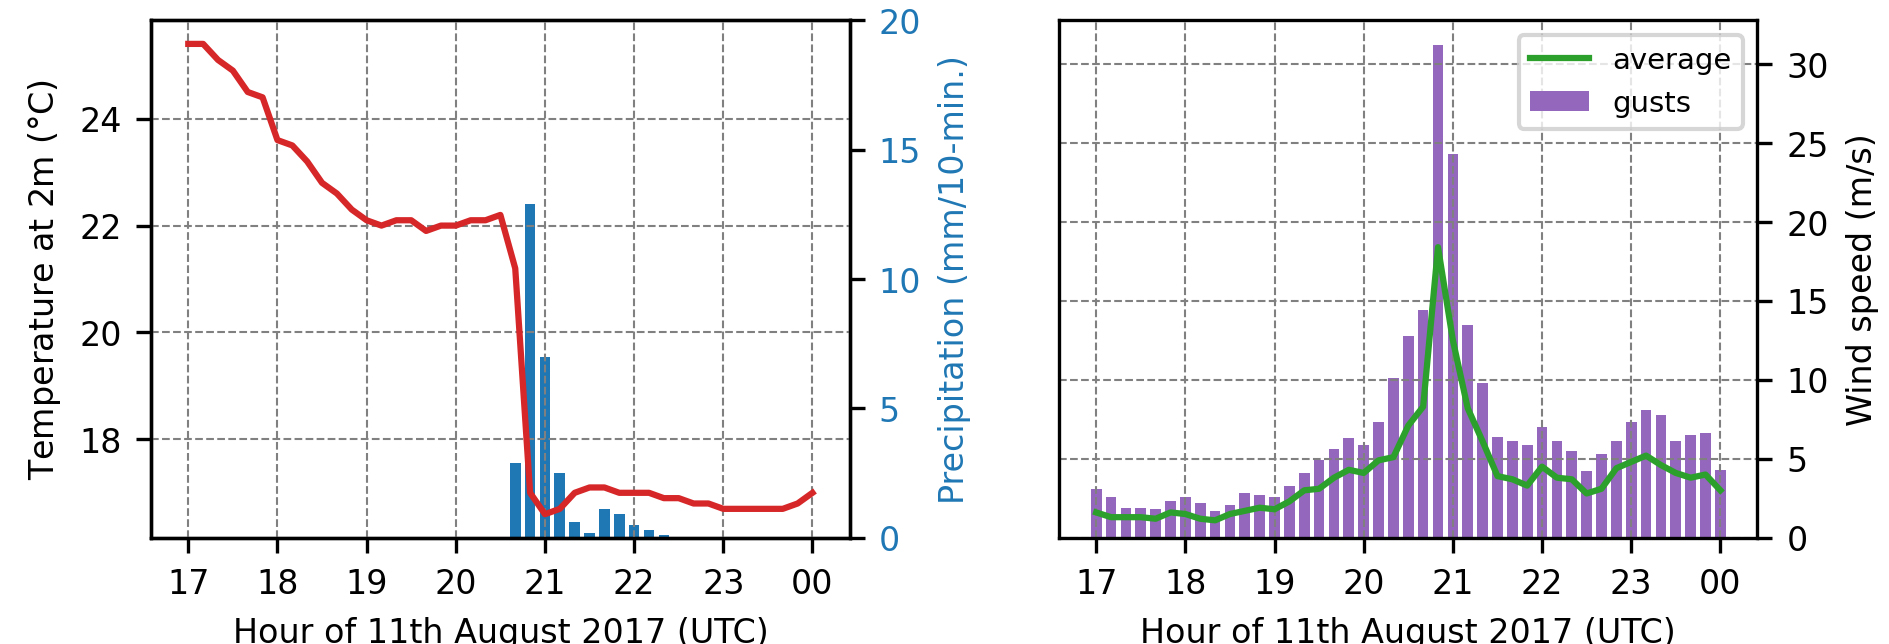 Parametry meteorologiczne obserwowane na stacji meteorologicznej Chojnice: temperatura powietrza (po lewej, czerwona linia), opady (po lewej, niebieskie słupki), prędkość wiatru (po prawej, zielona linia) i porywy wiatru (po prawej, fioletowe słupki).